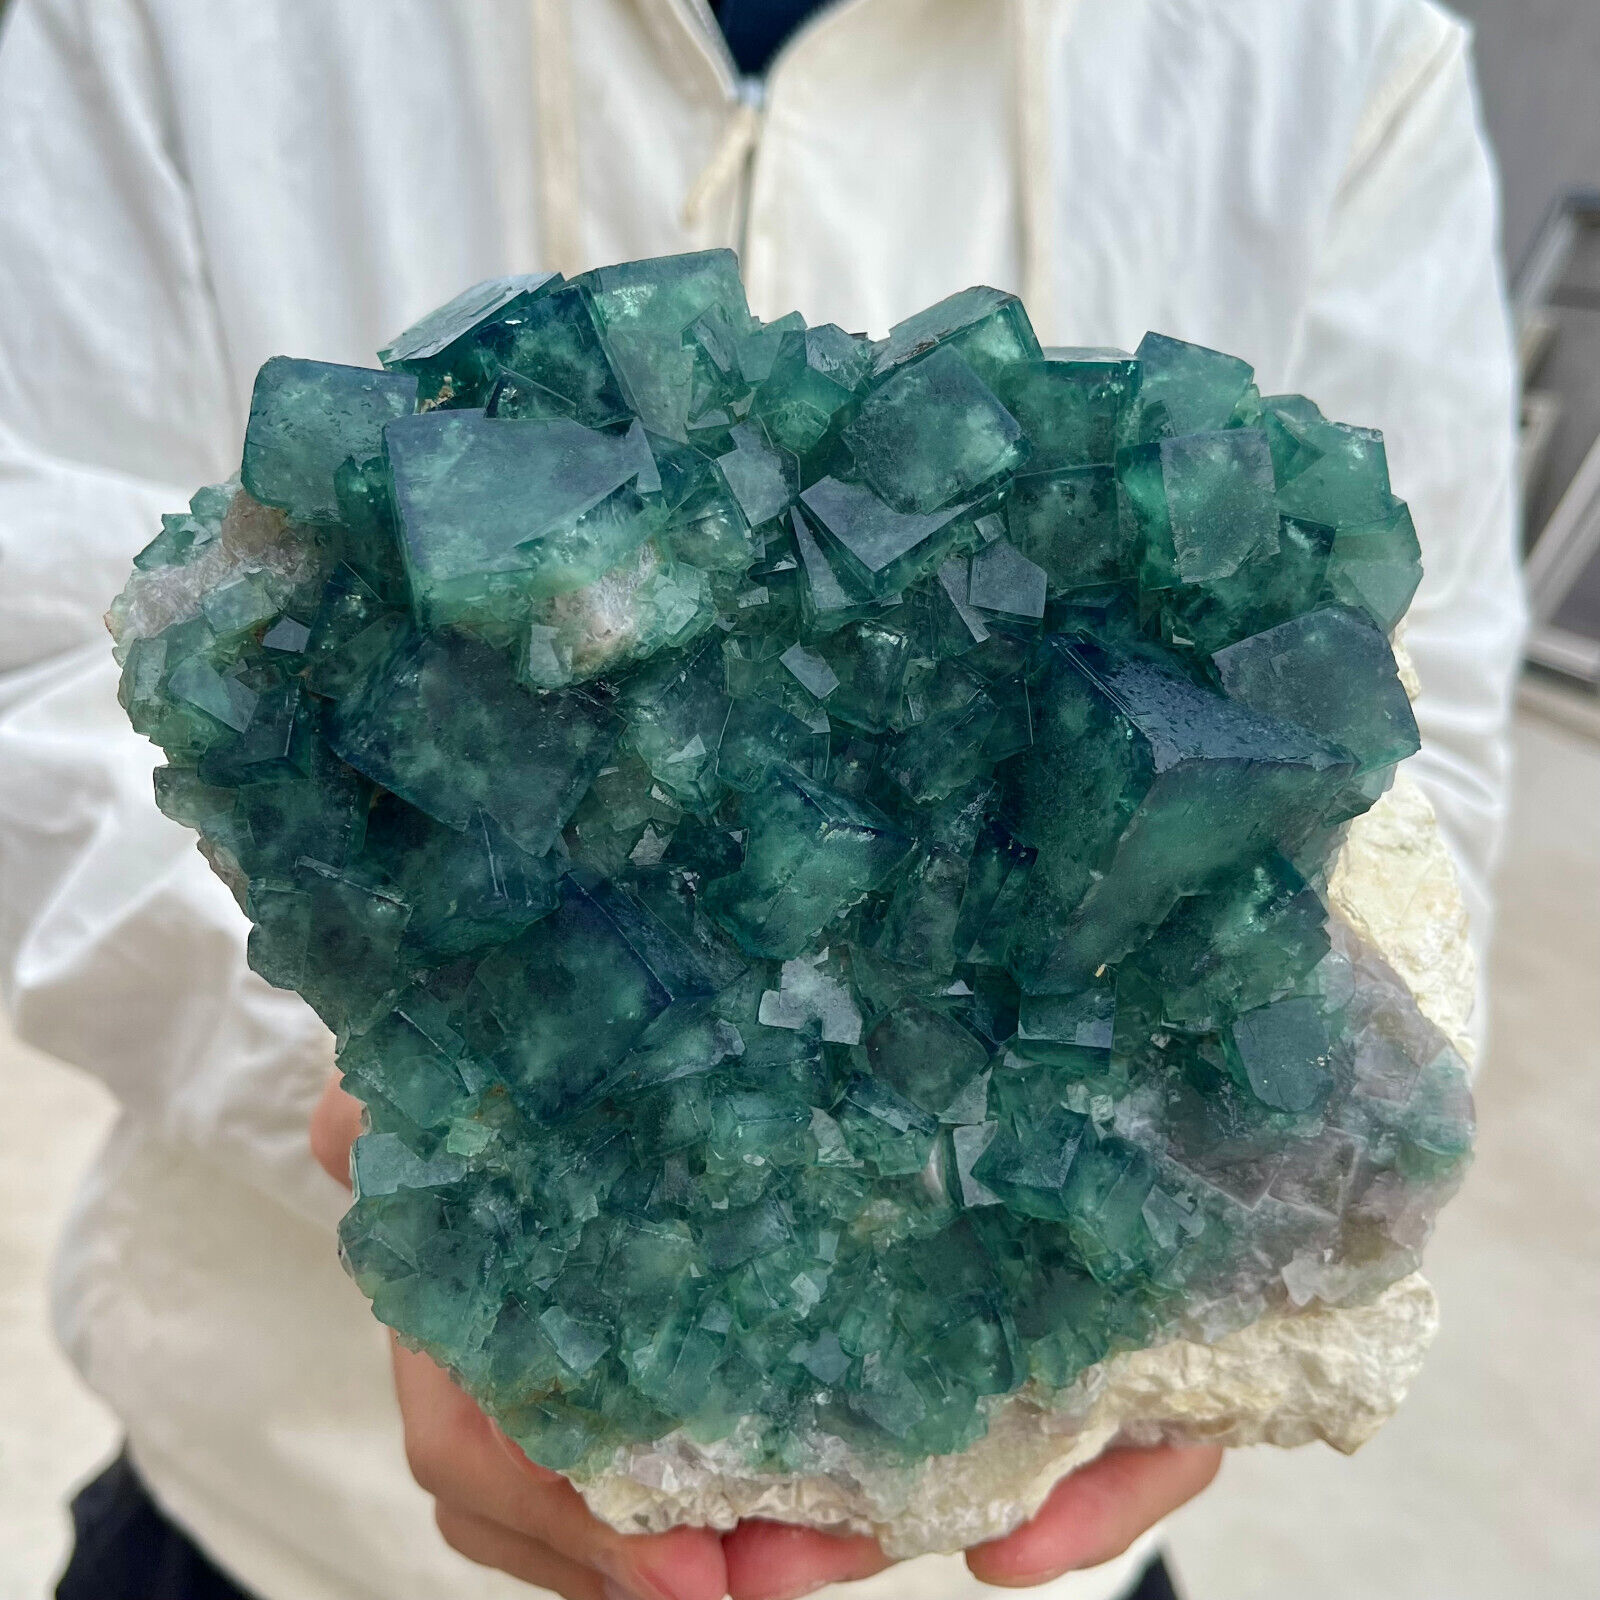 7.2lb Large NATURAL Green Cube FLUORITE Quartz Crystal Cluster Mineral Specimen